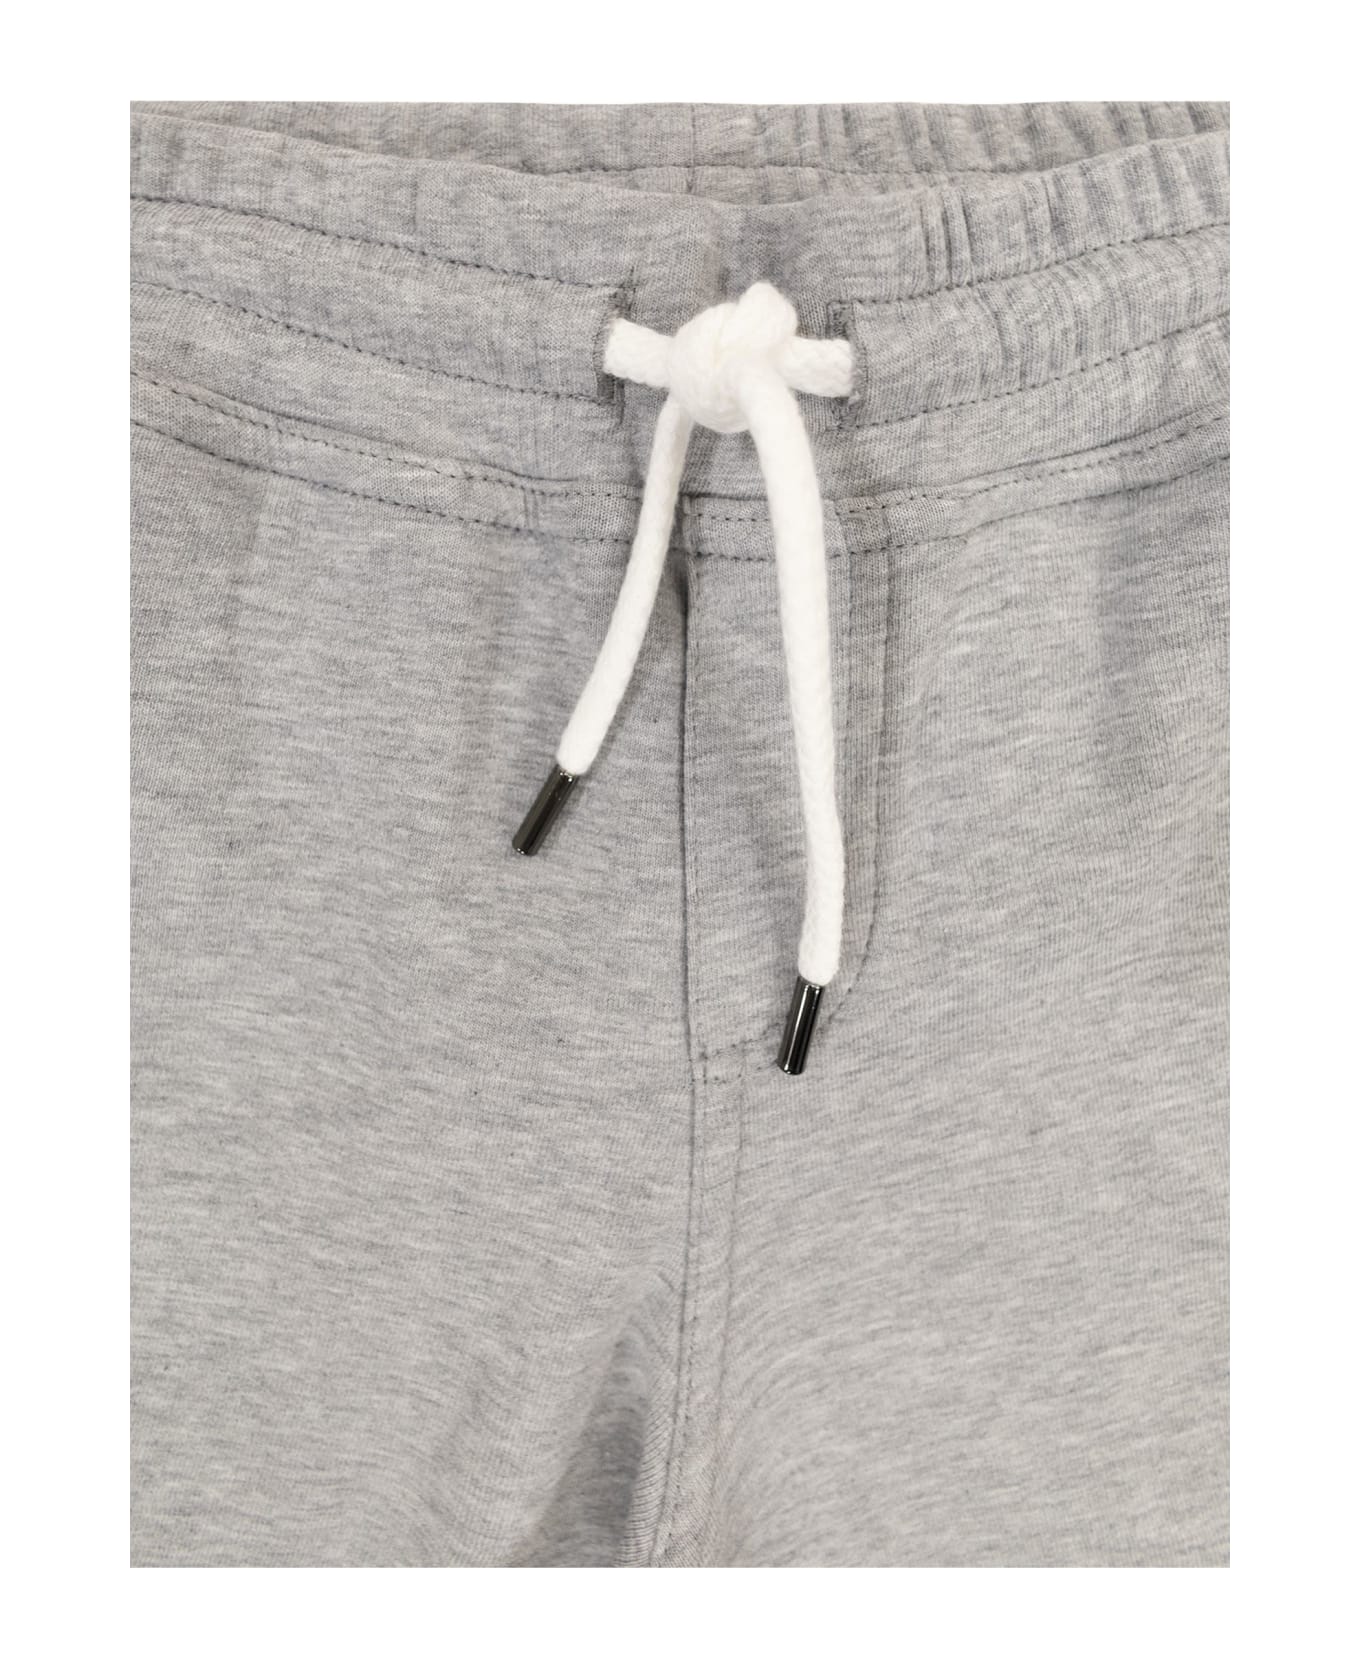 Brunello Cucinelli Bermuda Shorts In Techno Cotton Fleece - Grey ボトムス